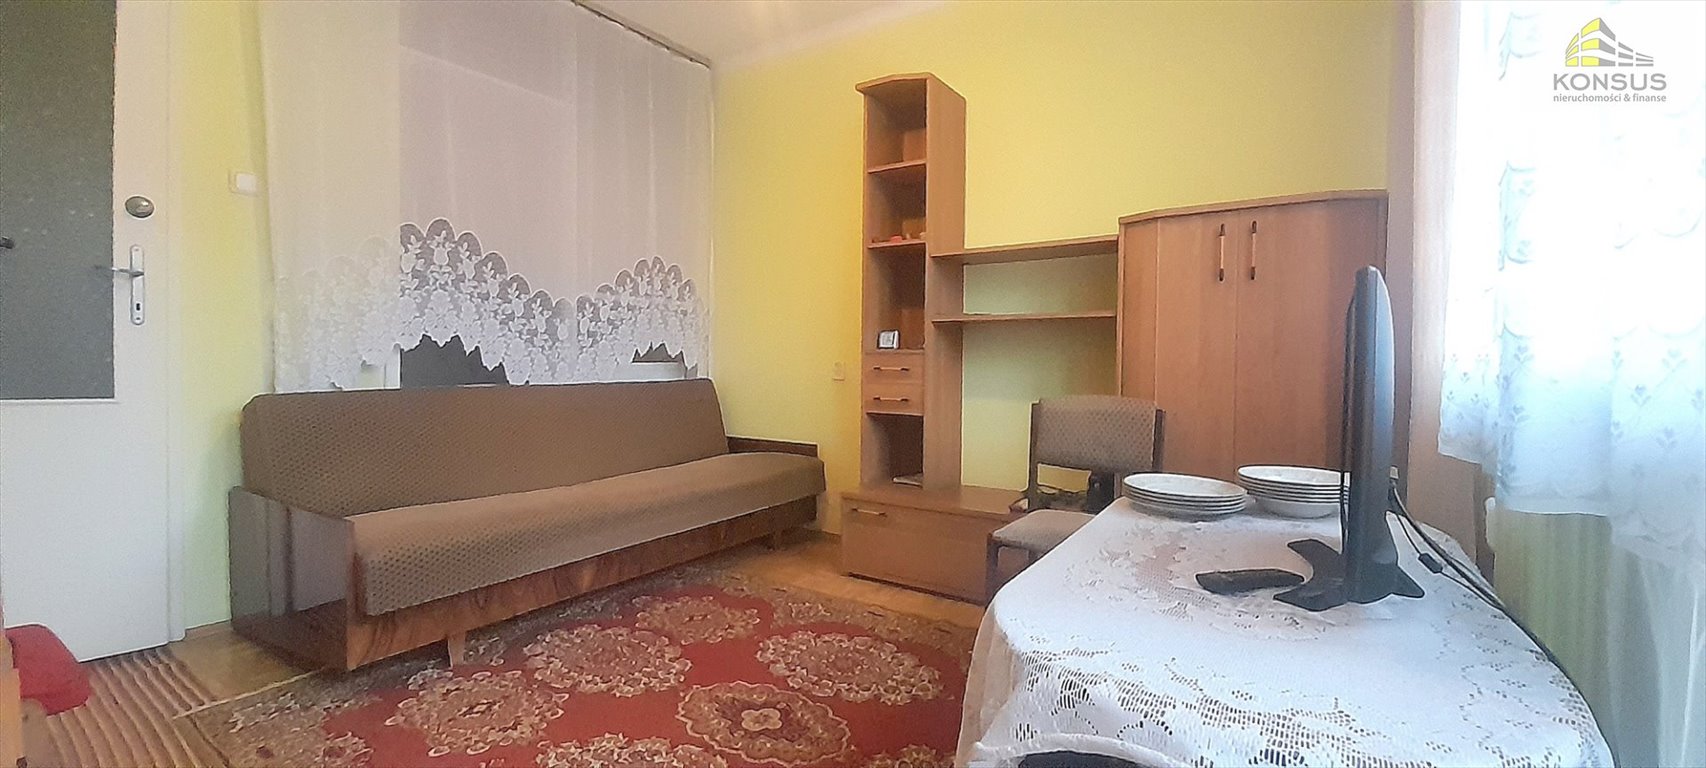 Mieszkanie trzypokojowe na sprzedaż Kielce, KSM, Mazurska  46m2 Foto 1